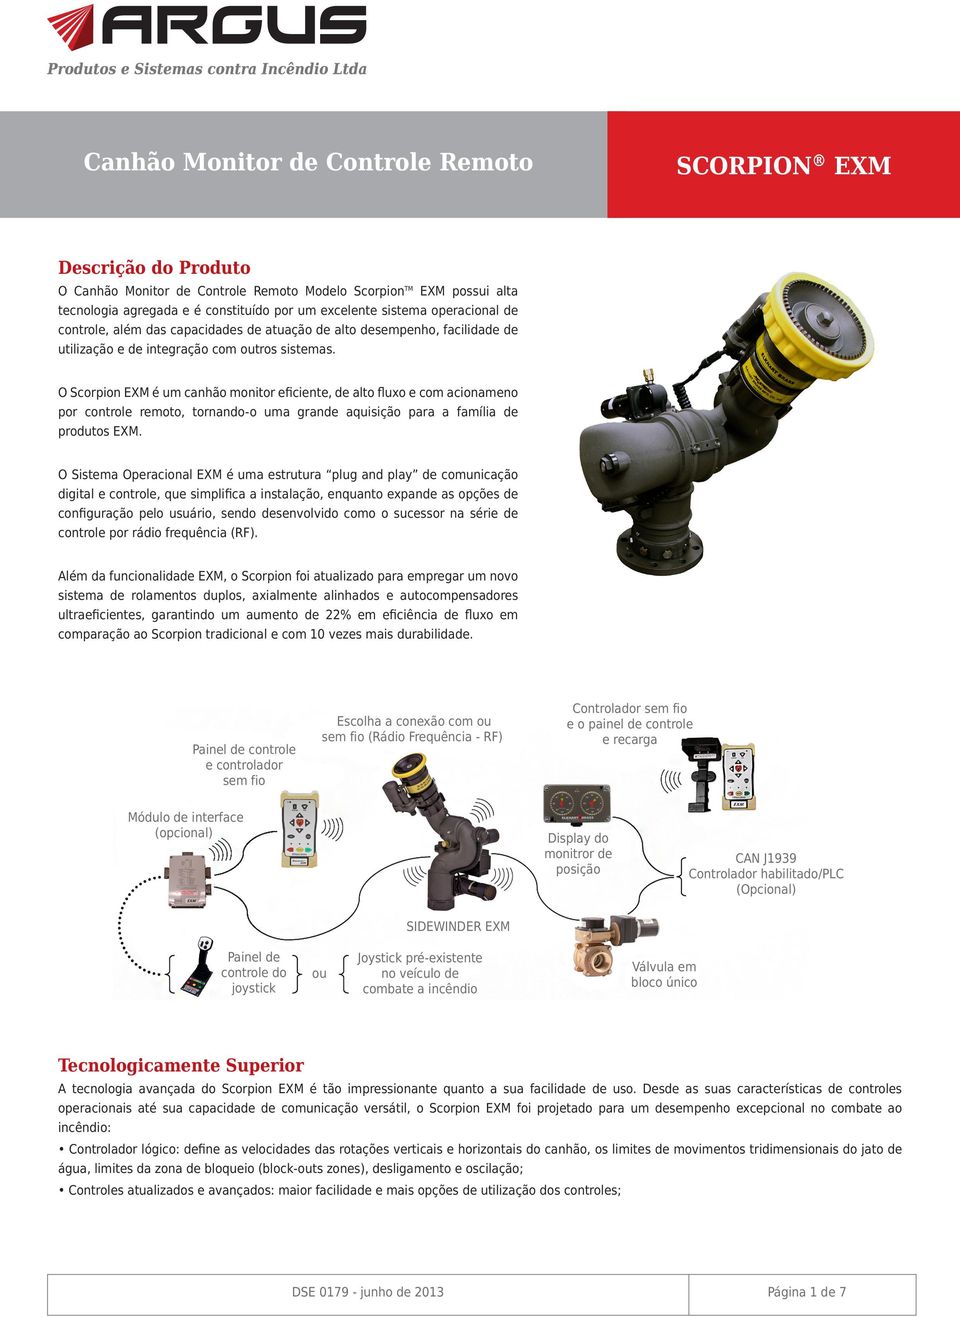 O Scorpion EXM é um canhão monitor eficiente, de alto fluxo e com acionameno por controle remoto, tornando-o uma grande aquisição para a família de produtos EXM.